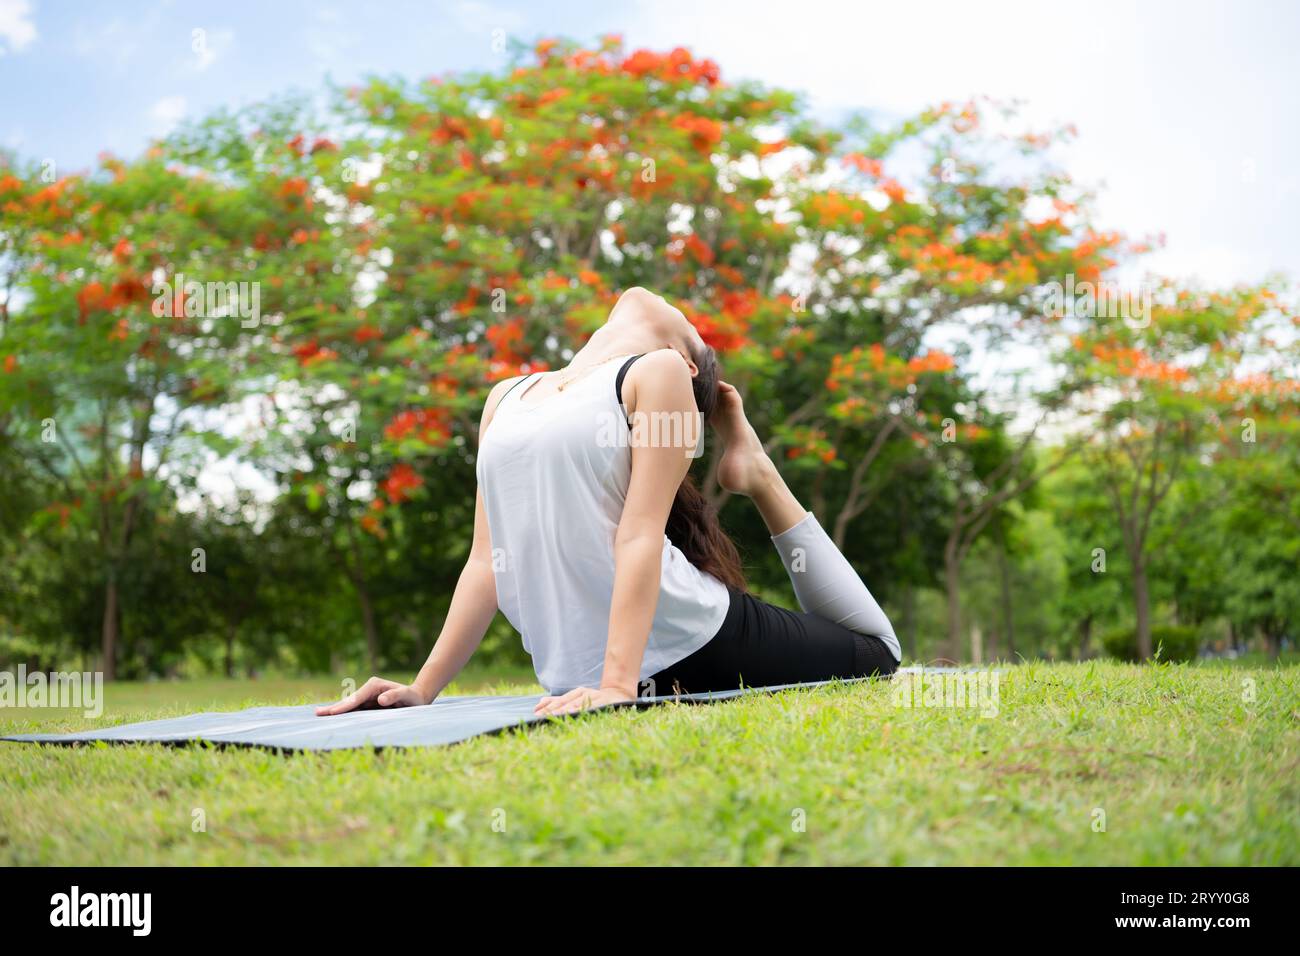 Junge Frau mit Outdoor-Aktivitäten im Stadtpark, Yoga ist ihre gewählte Aktivität. Stockfoto